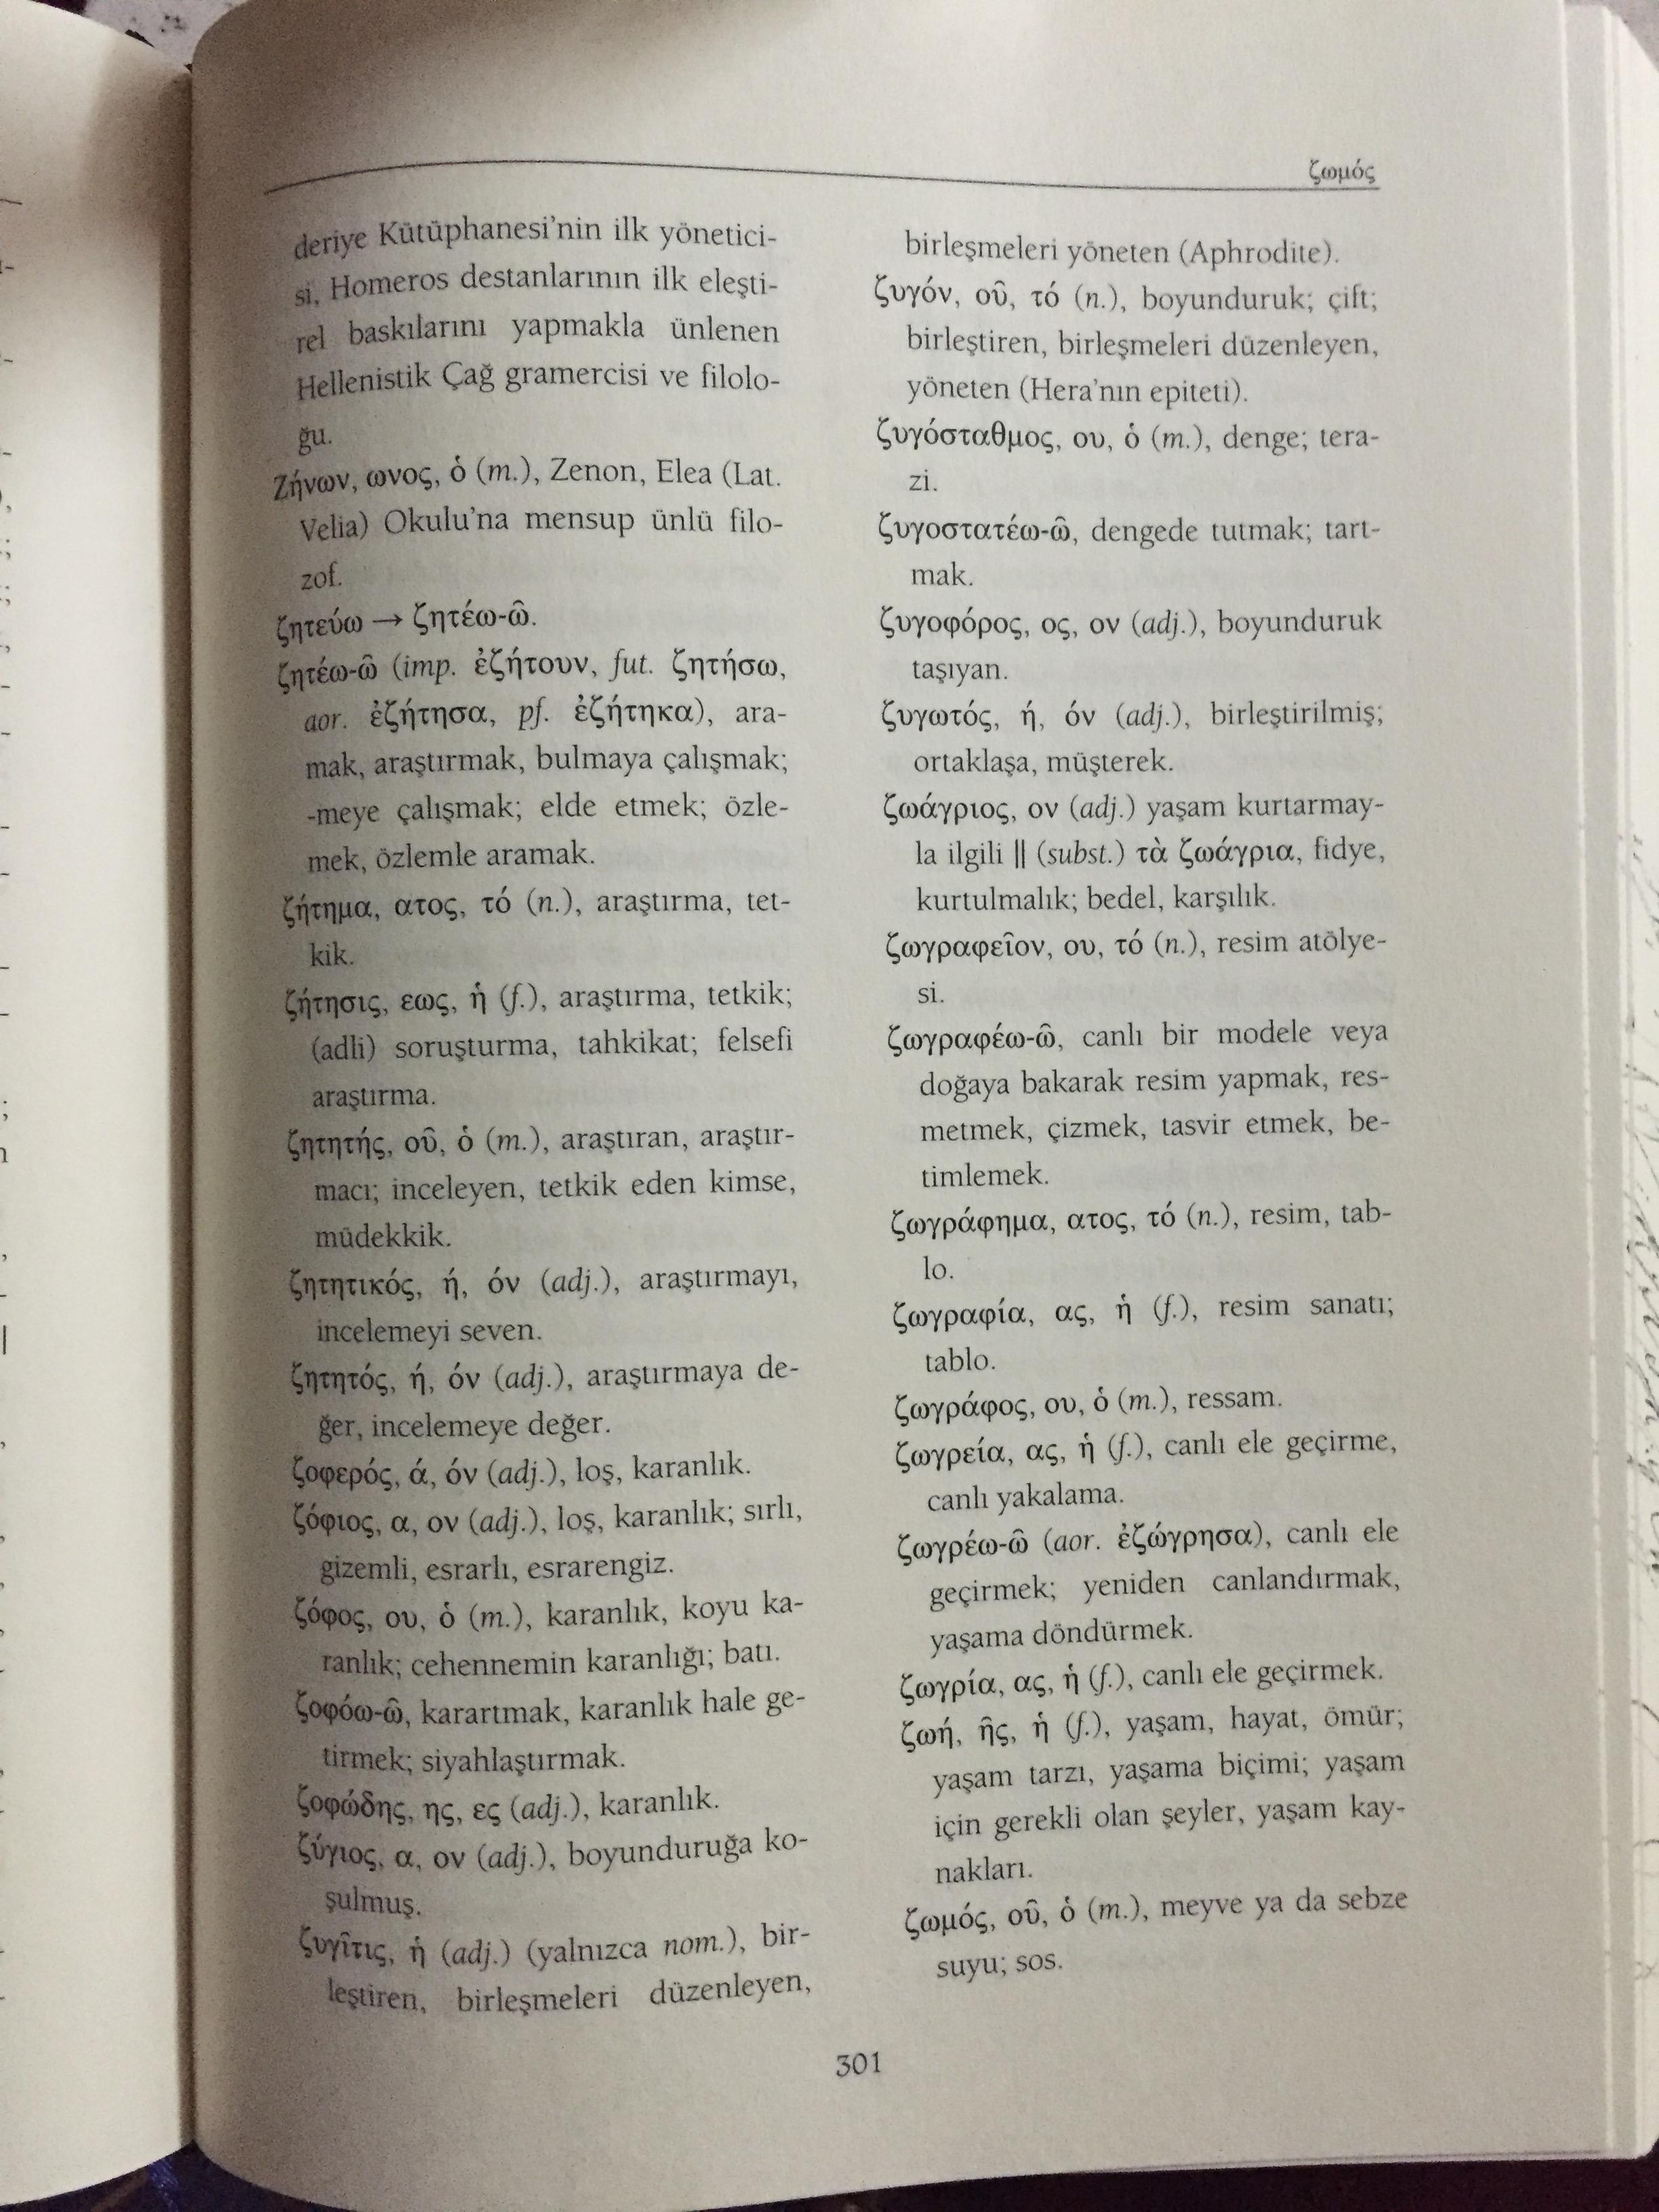 eski yunanca türkçe sözlük - uludağ sözlük